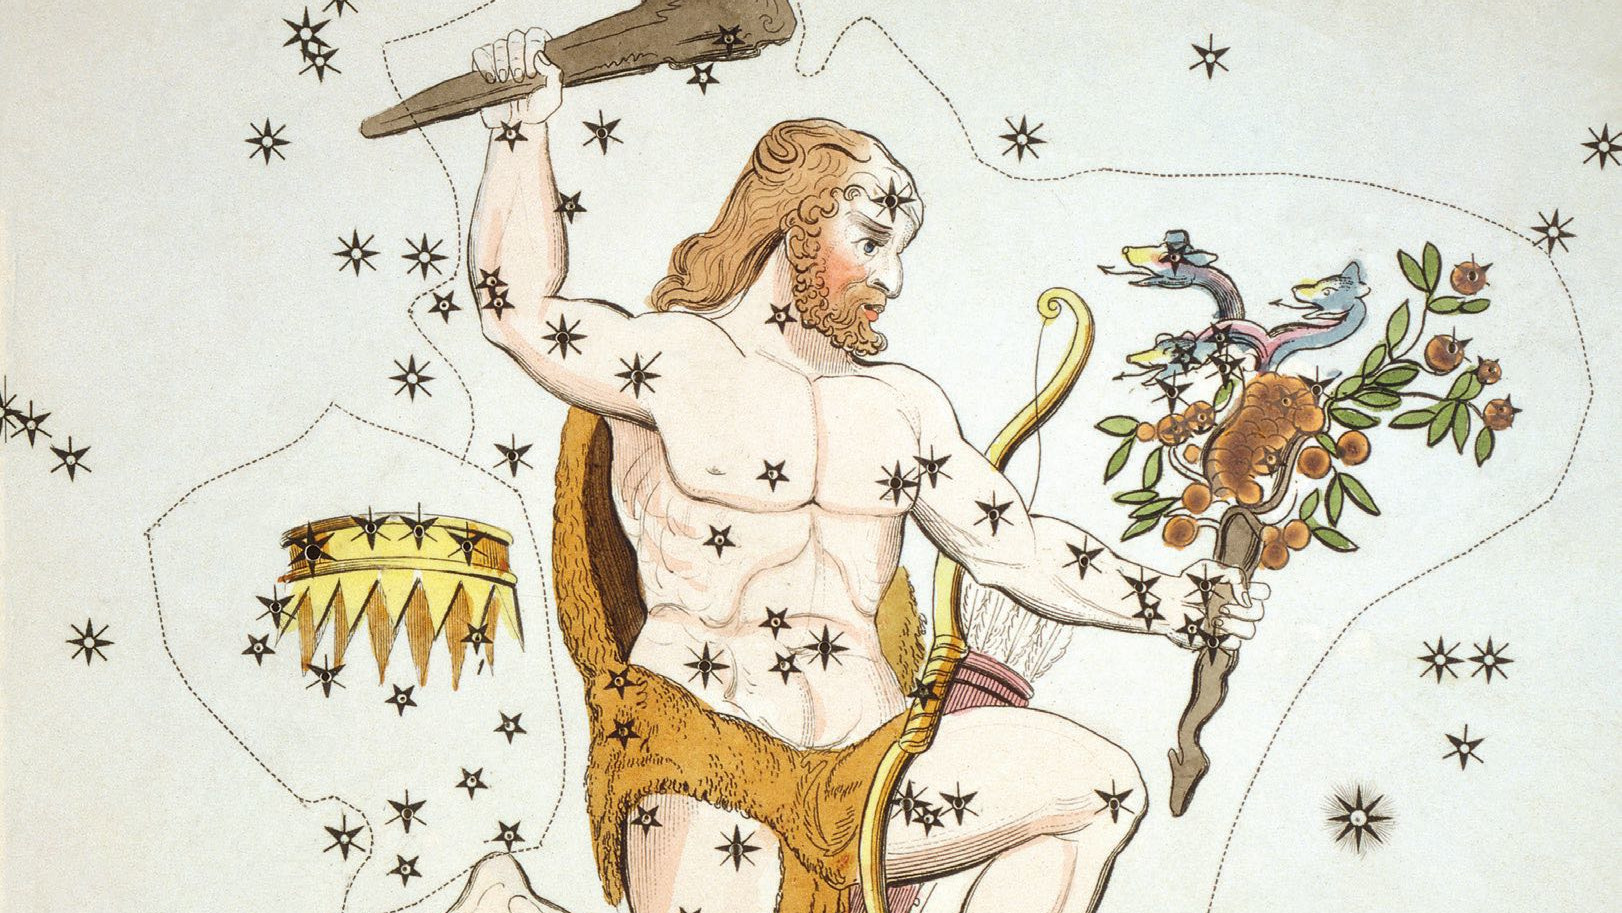 Auf historischen Abbildungen sieht man Herkules komplett mit einer Keule in der Hand, dem Fell des Löwen und
den gestohlenen goldenen Äpfeln dargestellt. 